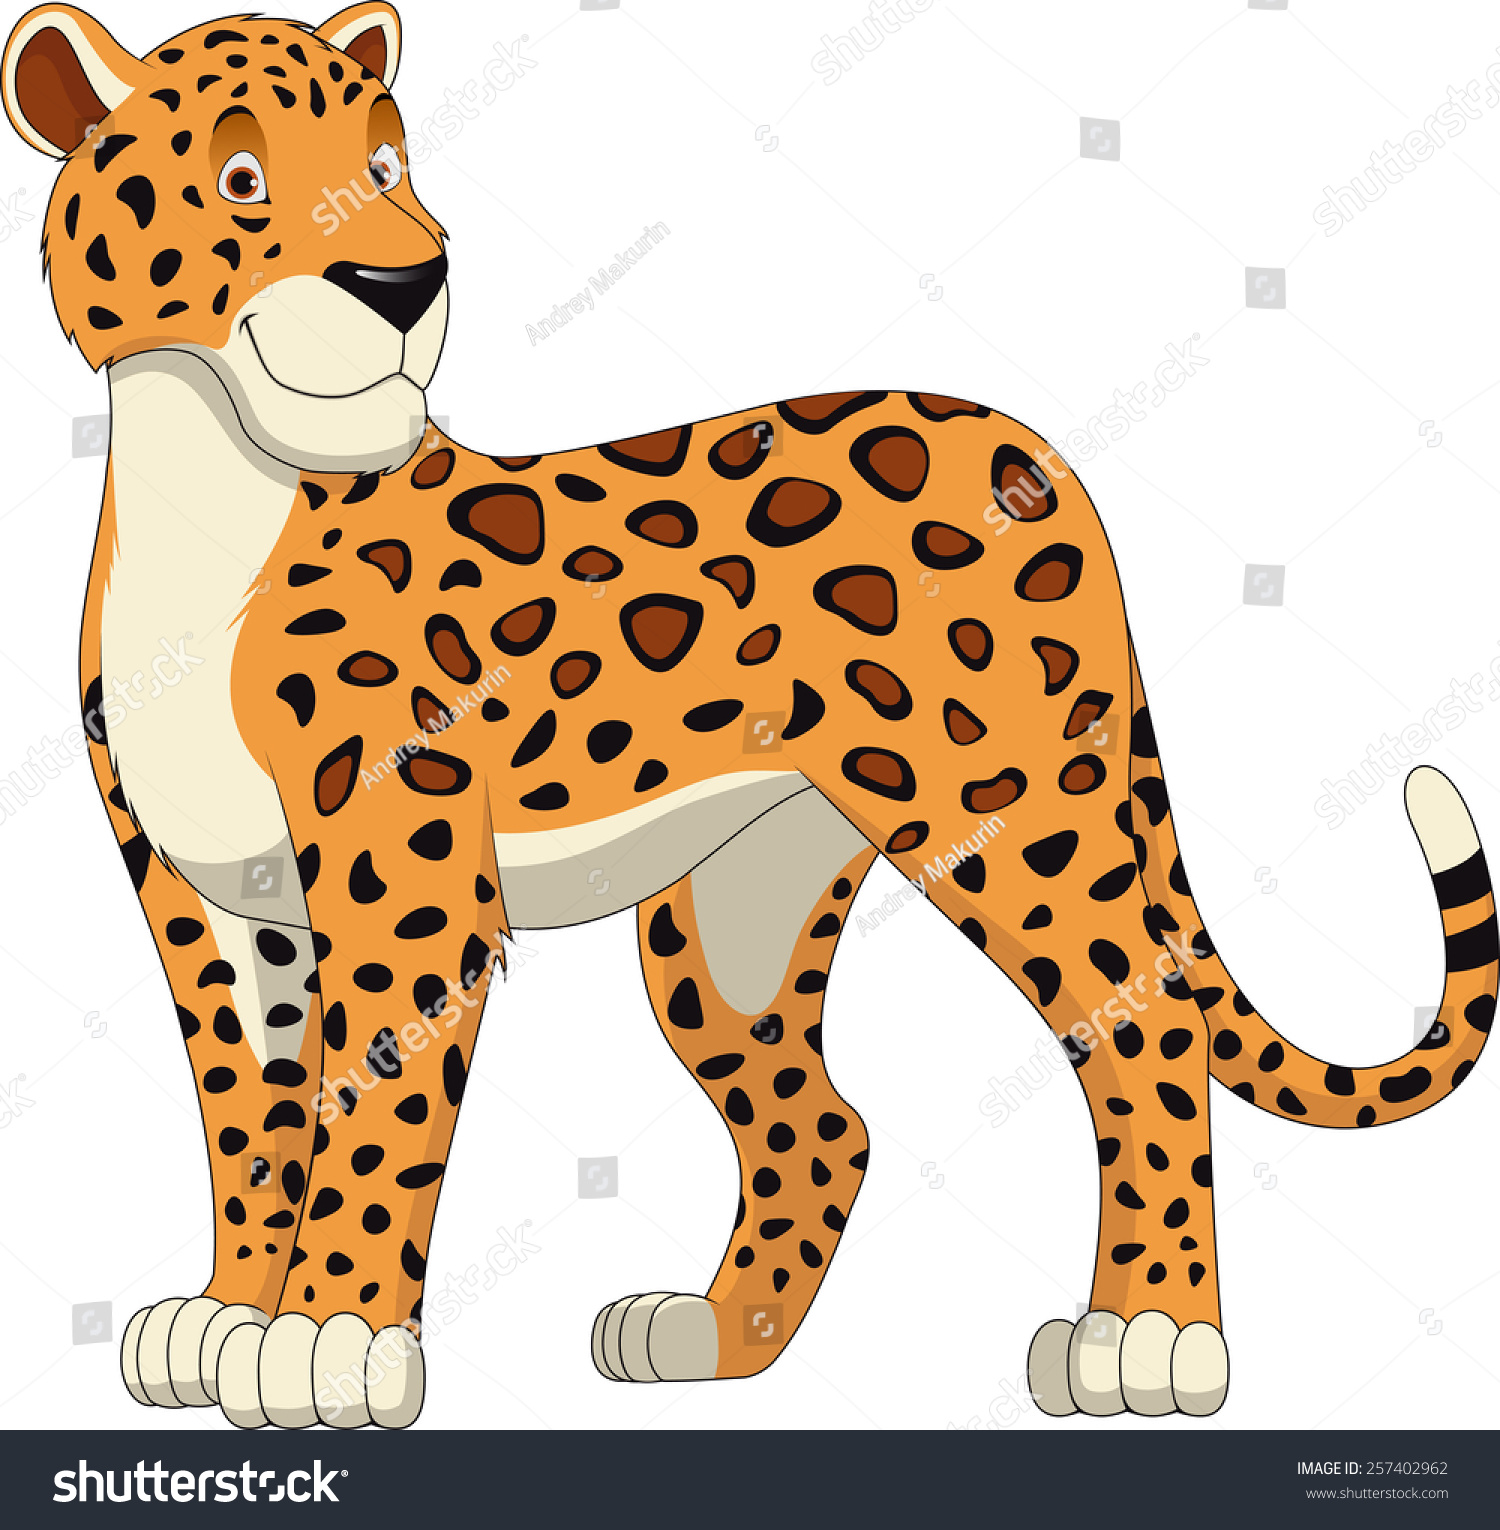 Leopard cartoon Images, Stock Photos & Vectors | Shutterstock